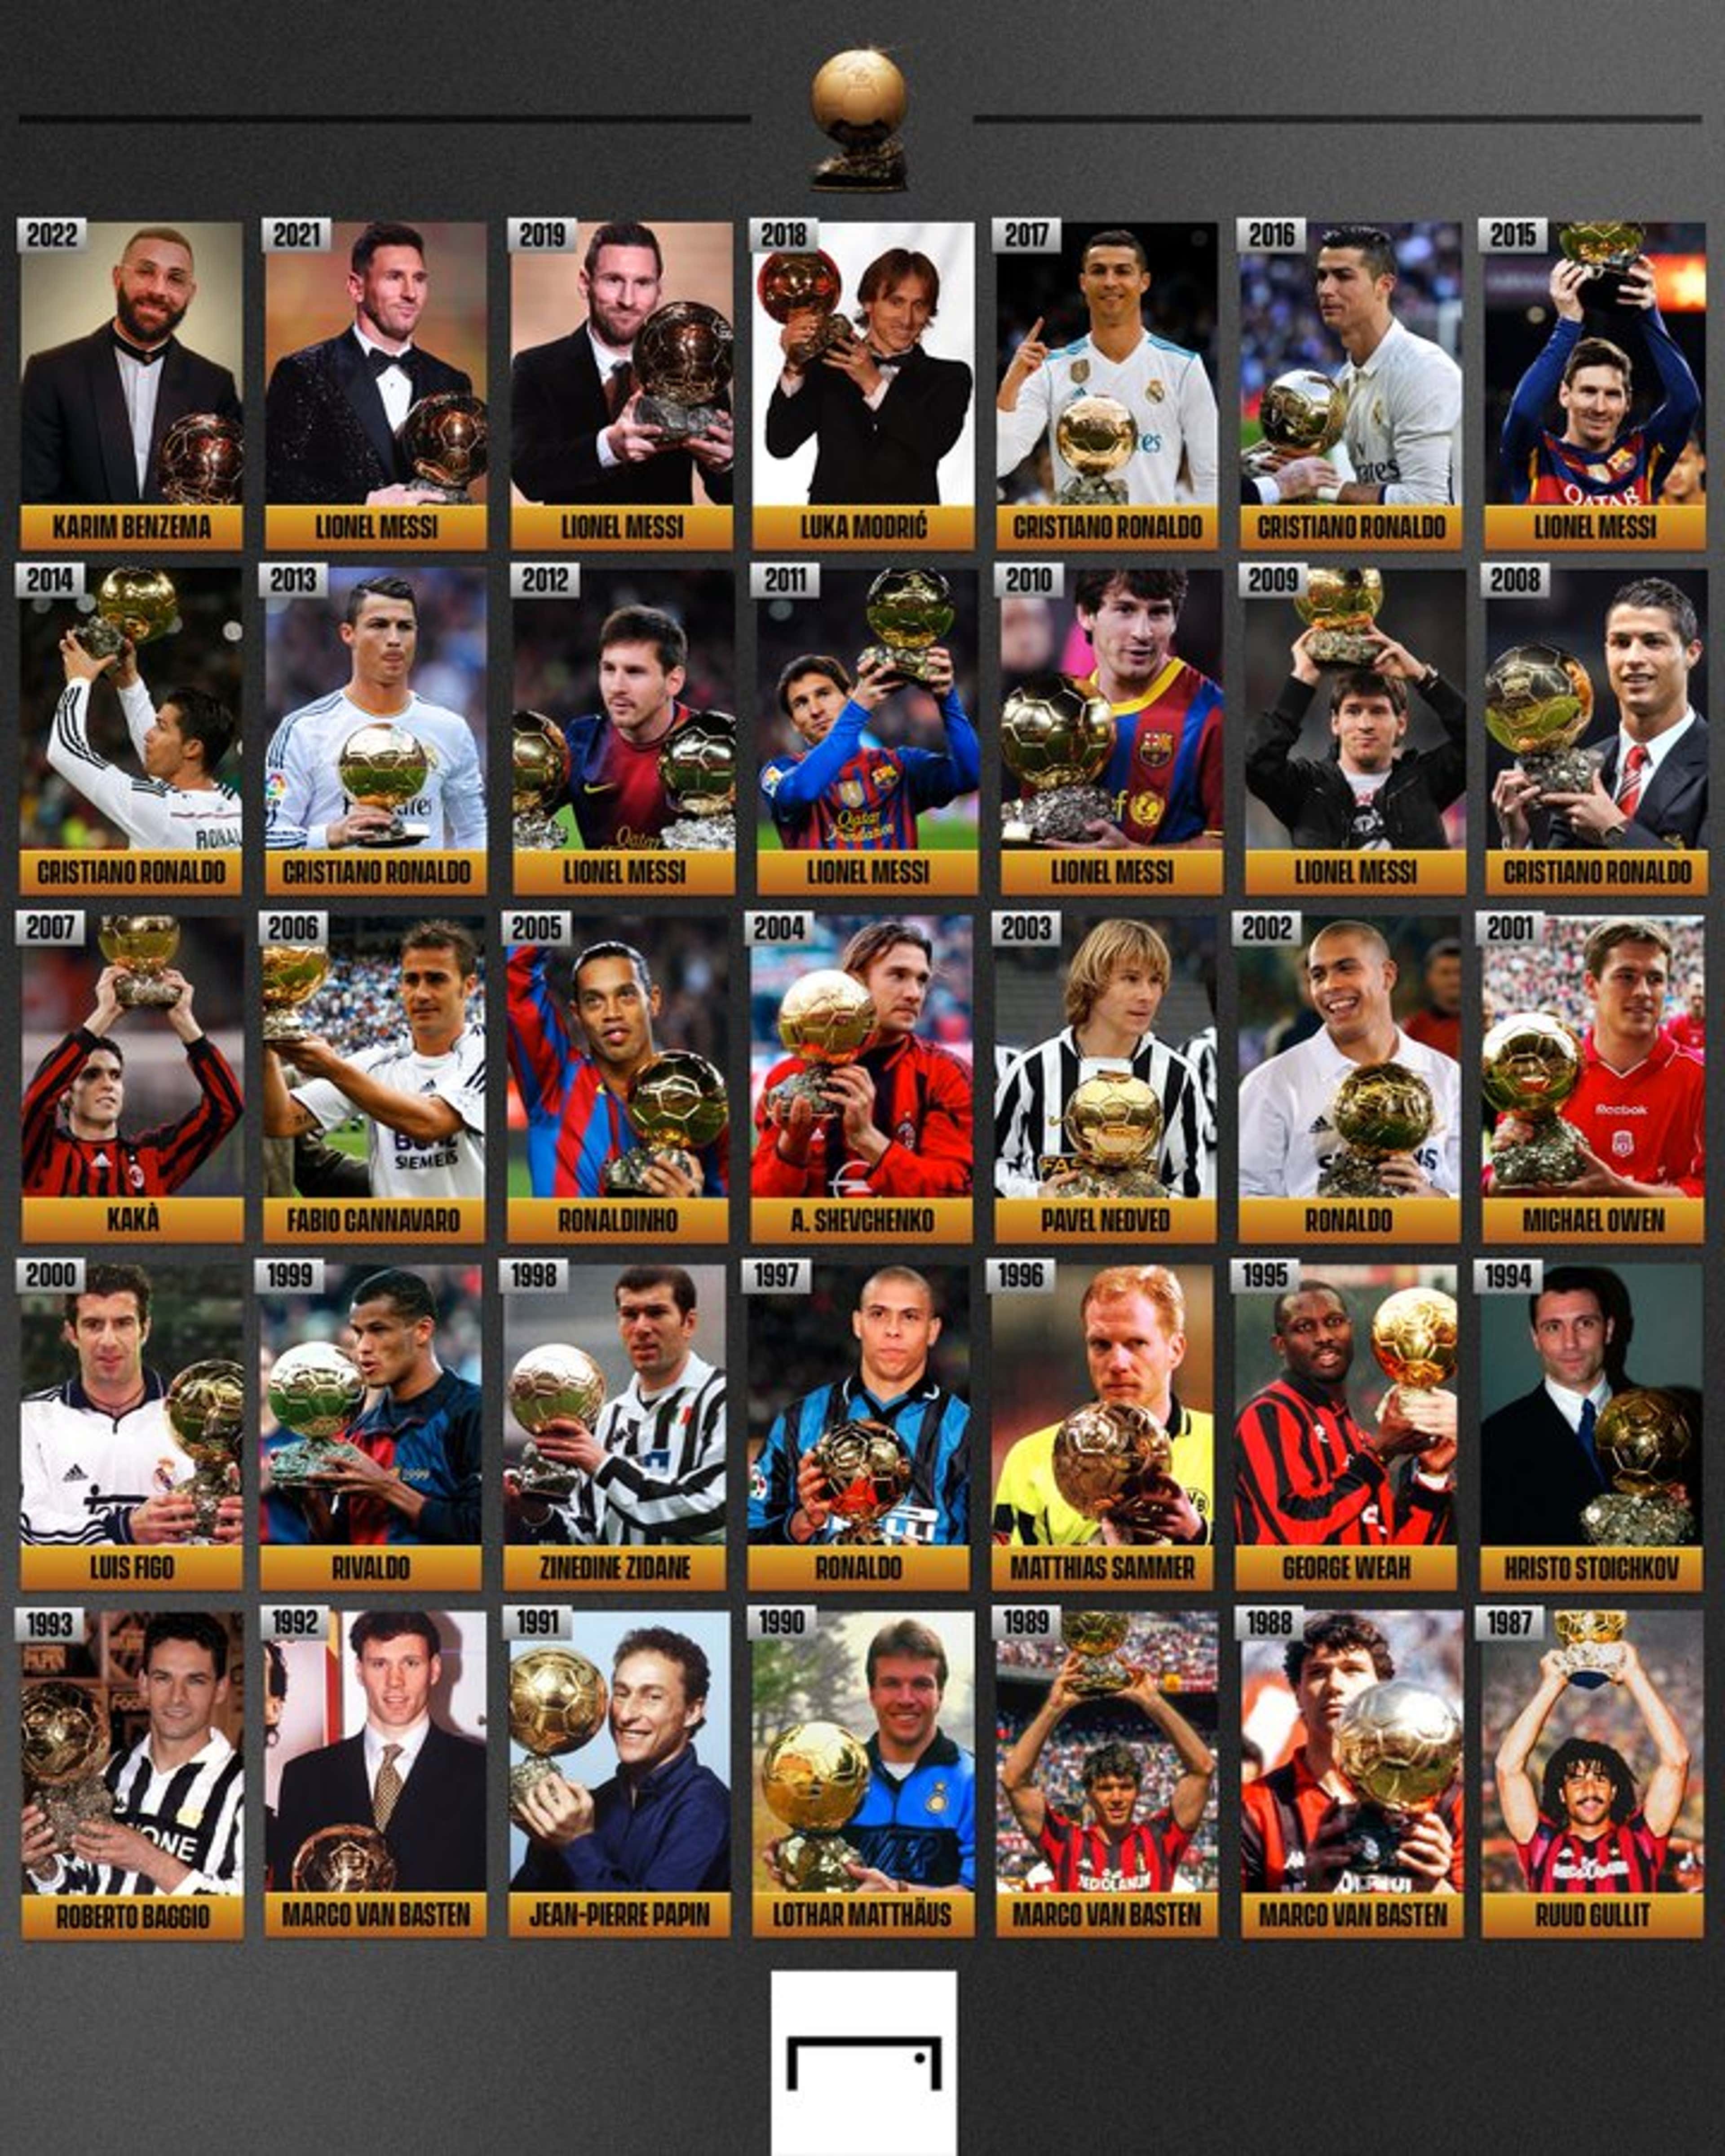 Lista de los futbolistas que más veces han ganado el Balón de Oro